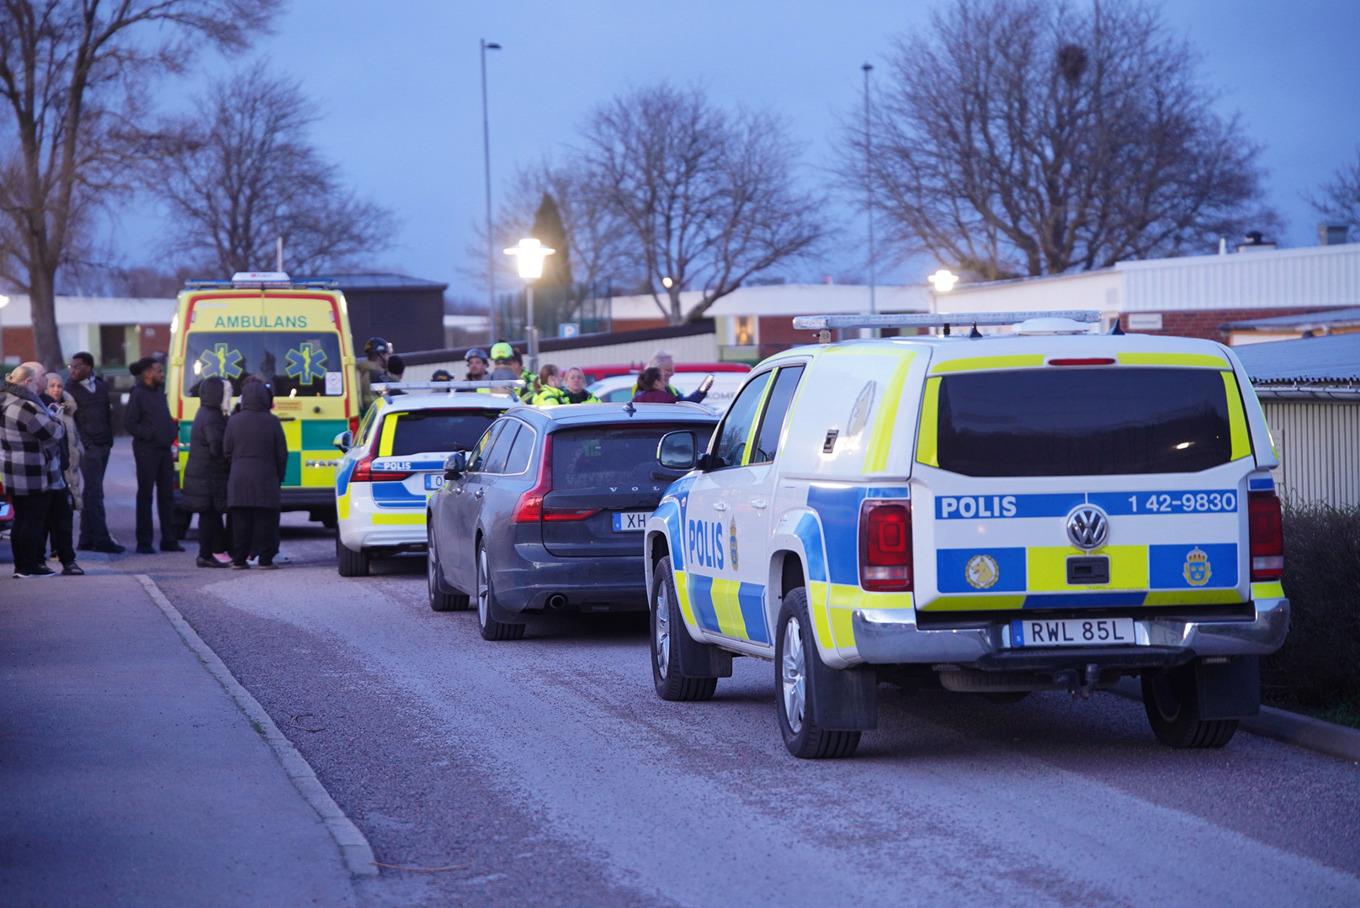 Polis, ambulans och avspärrningar efter att en pojke i övre tonåren hittades skottskadad i stadsdelen Navestad i Norrköping på söndagskvällen. Foto: Niklas Luks/TT